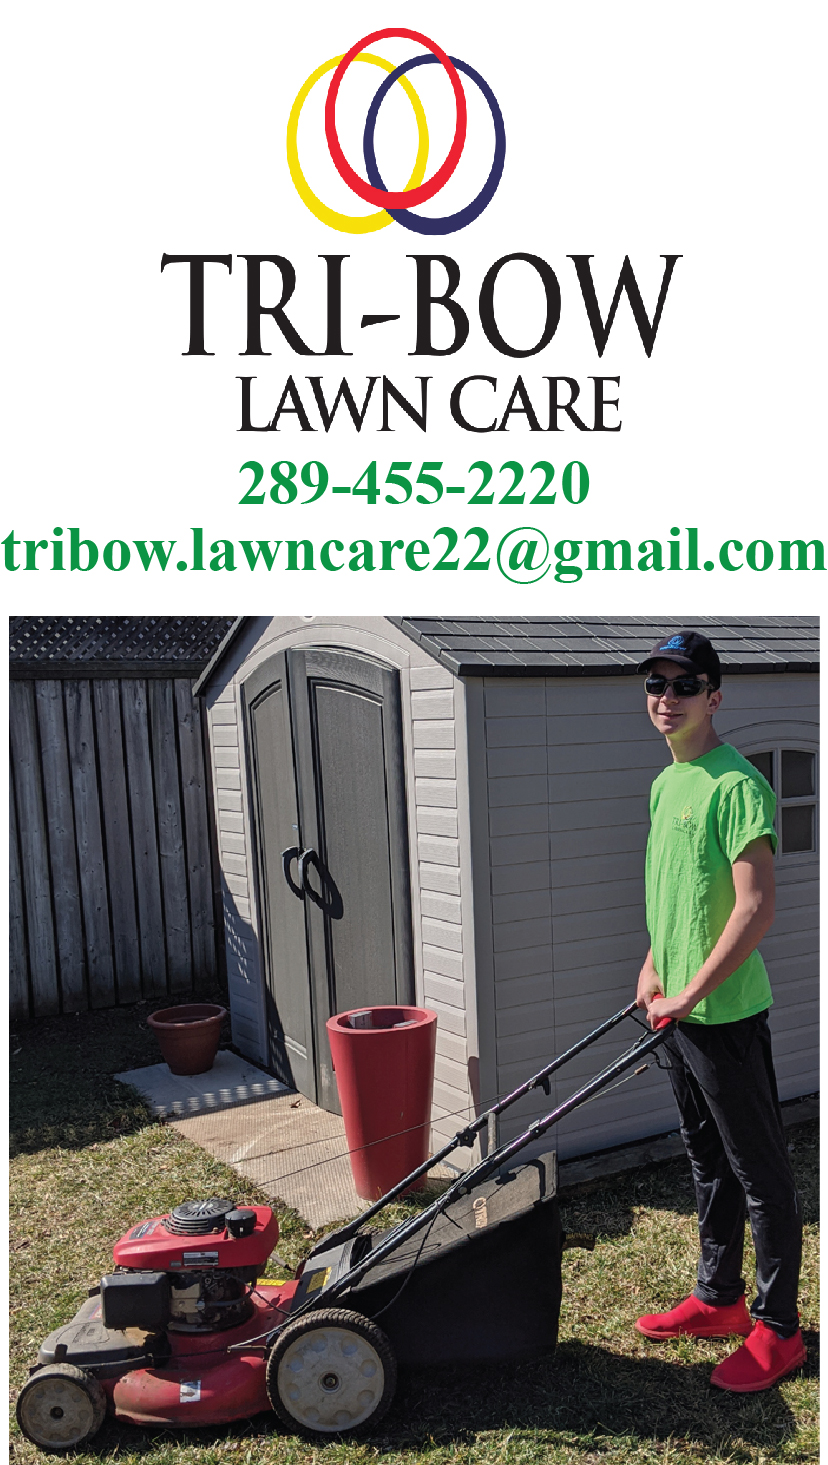 Tri-Bow Lawn Care